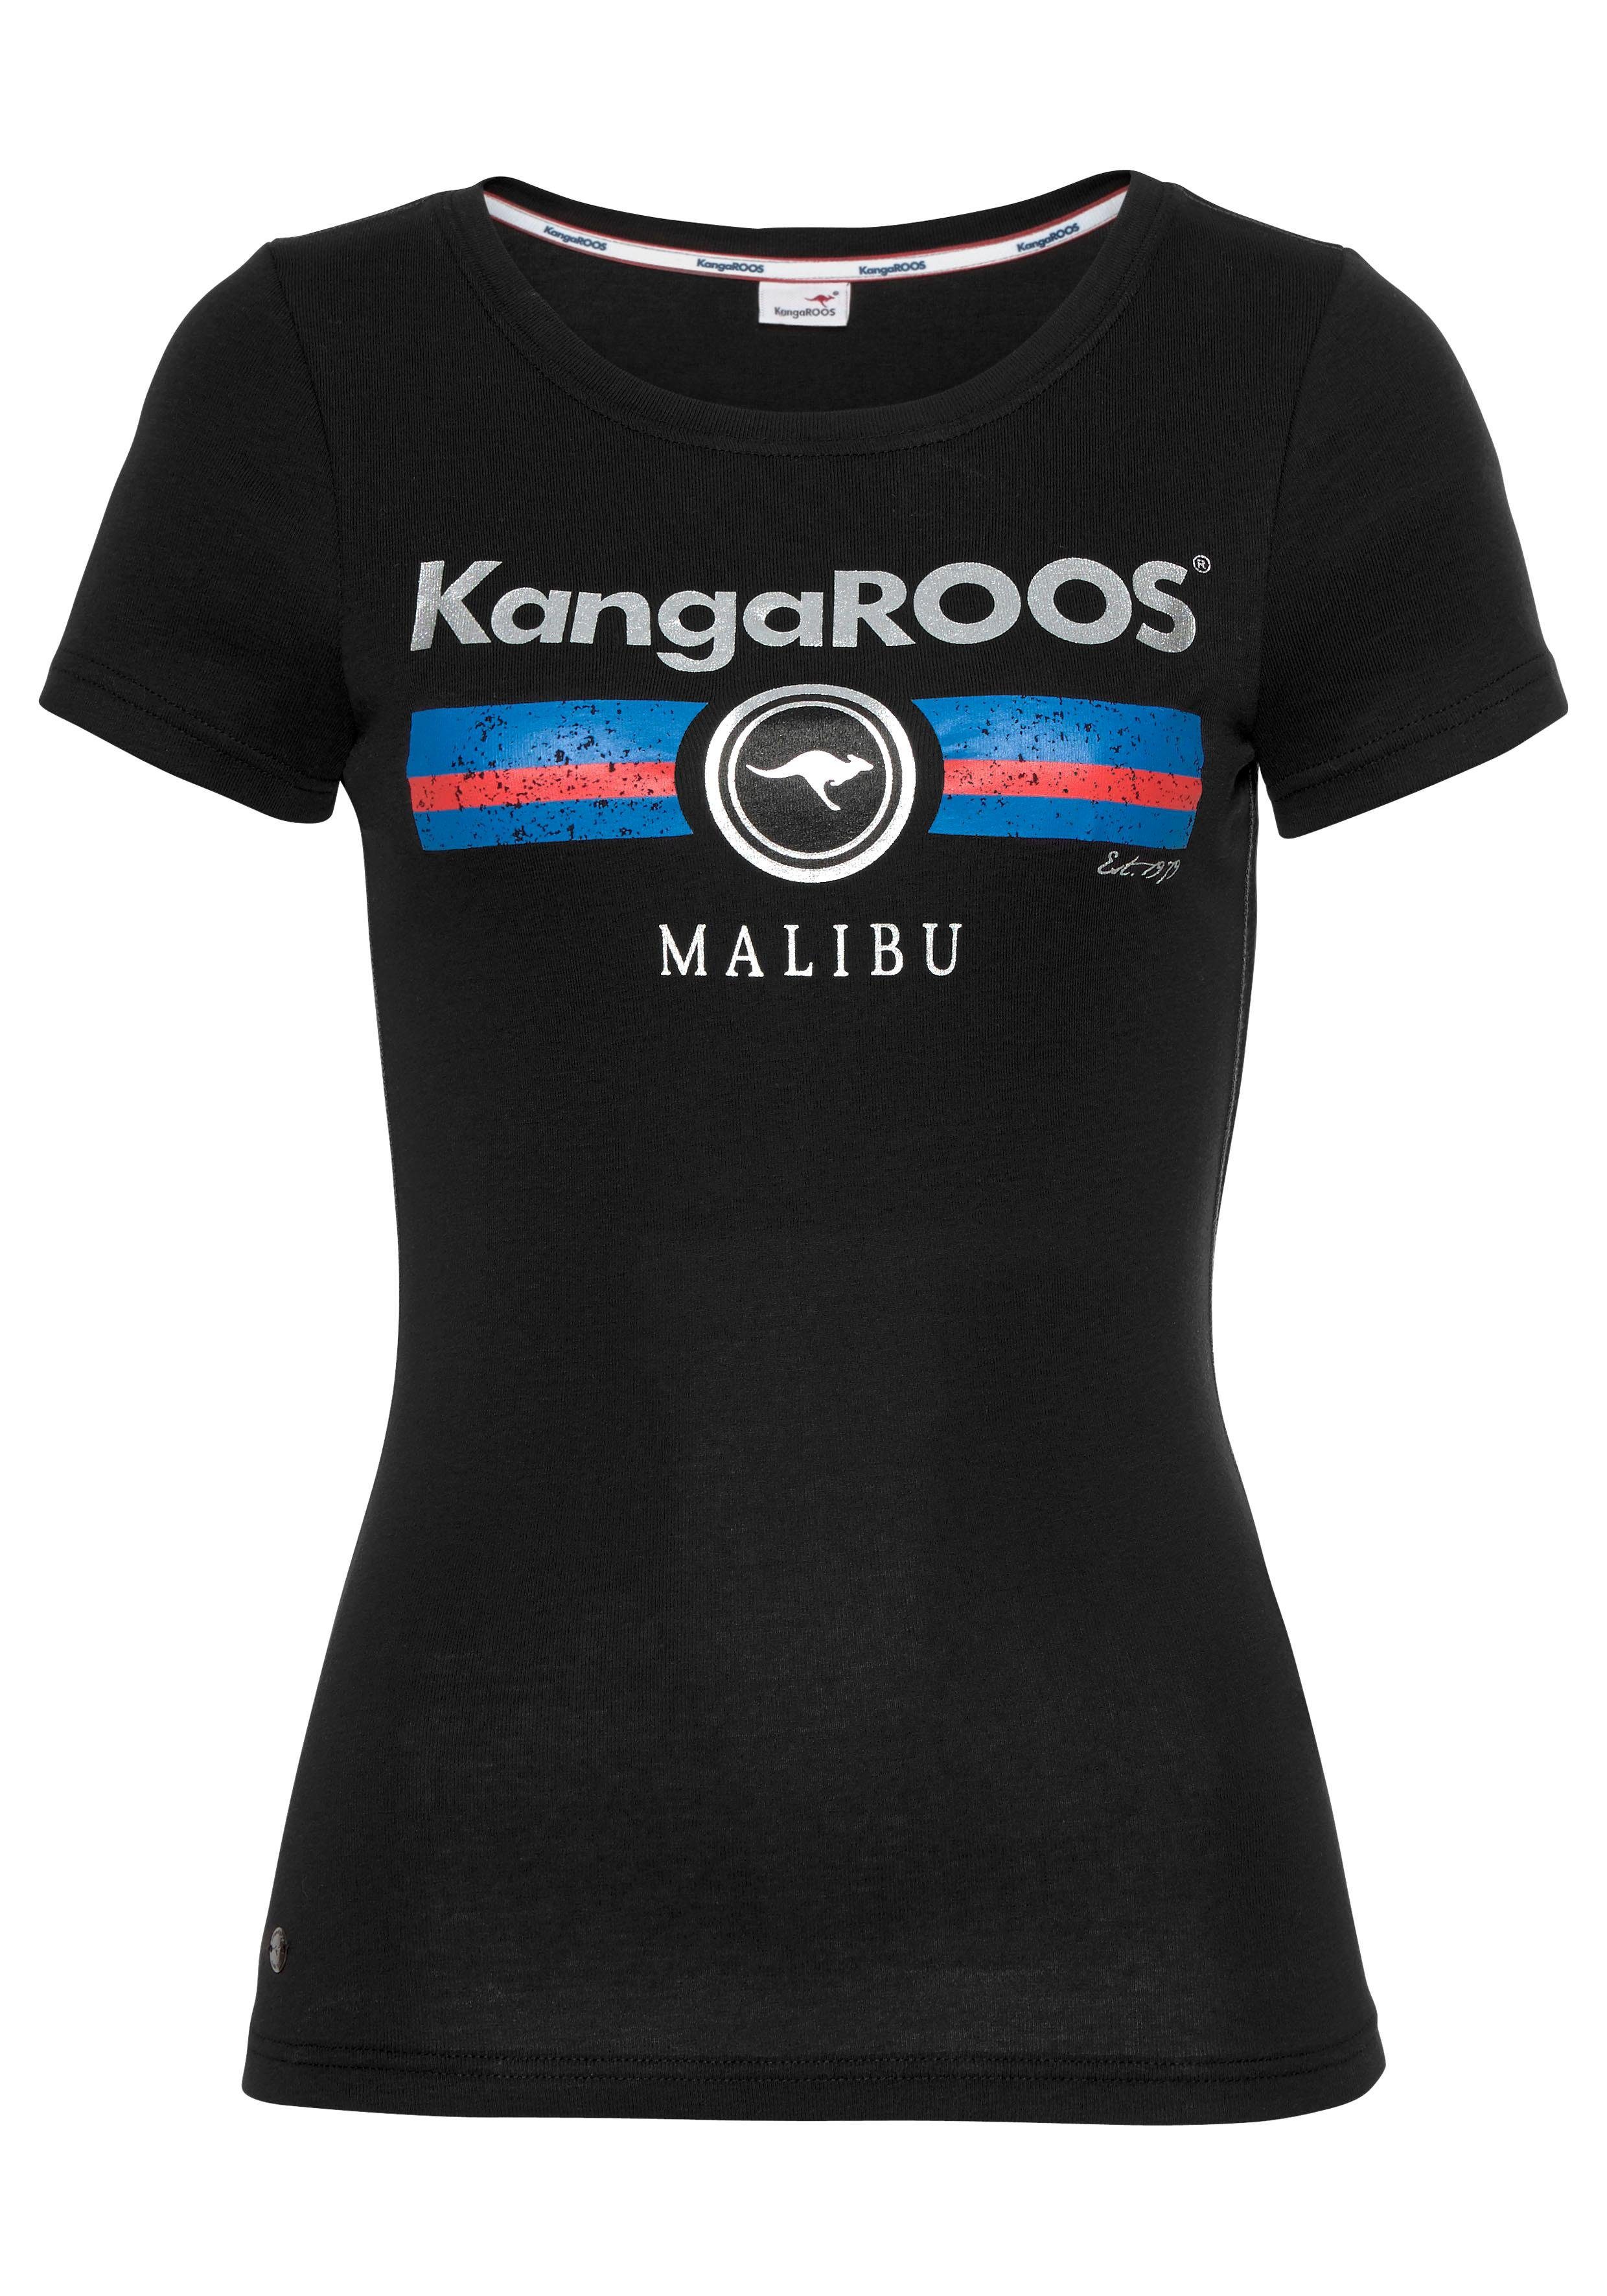 Damen Shirts KangaROOS T-Shirt mit Label Metallic Print